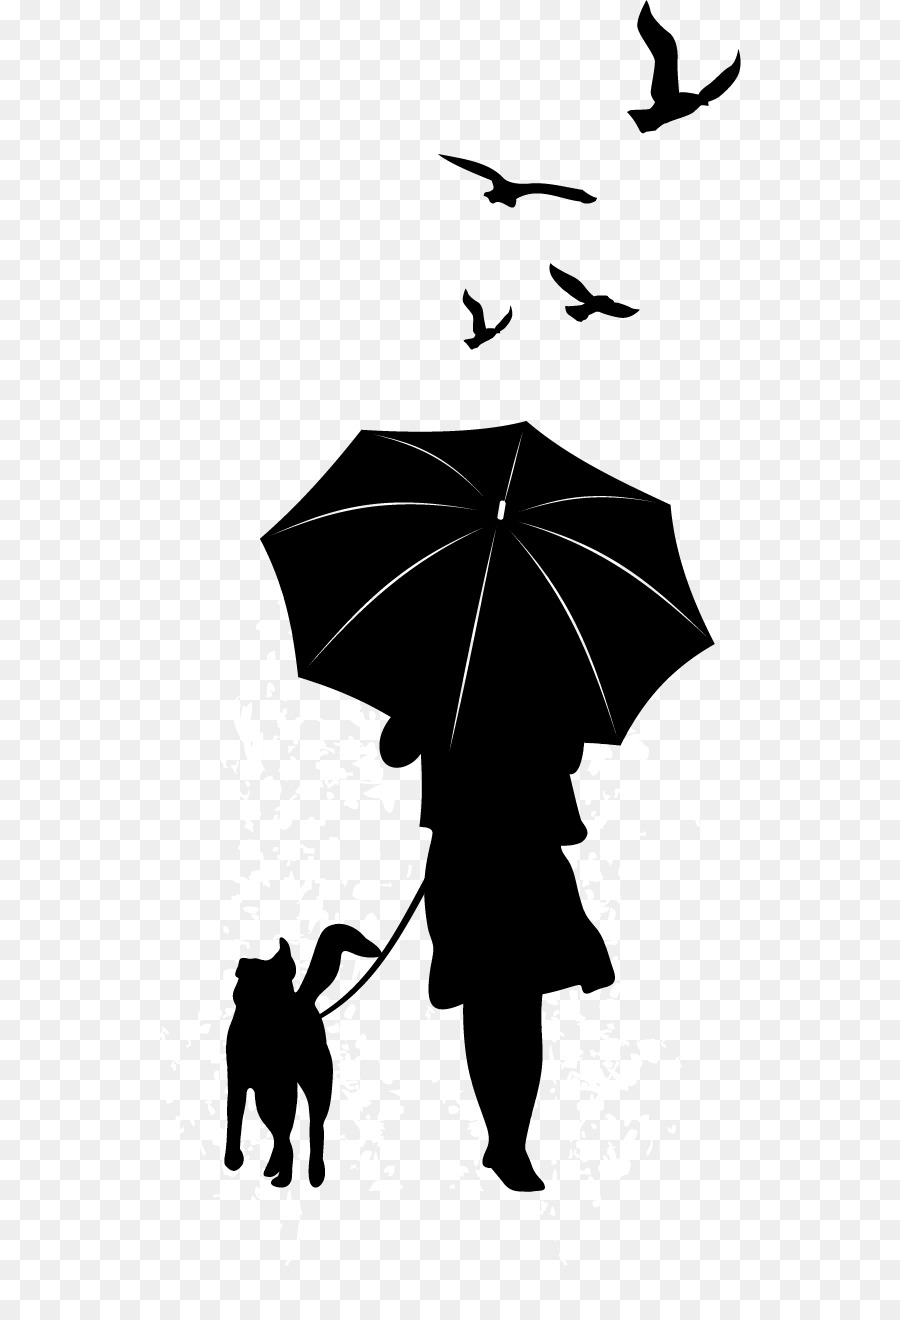 Dog Silhouette Umbrella Illustration - Leisure vector dog png download - 582*1303 - Free Transparent Dog png Download.